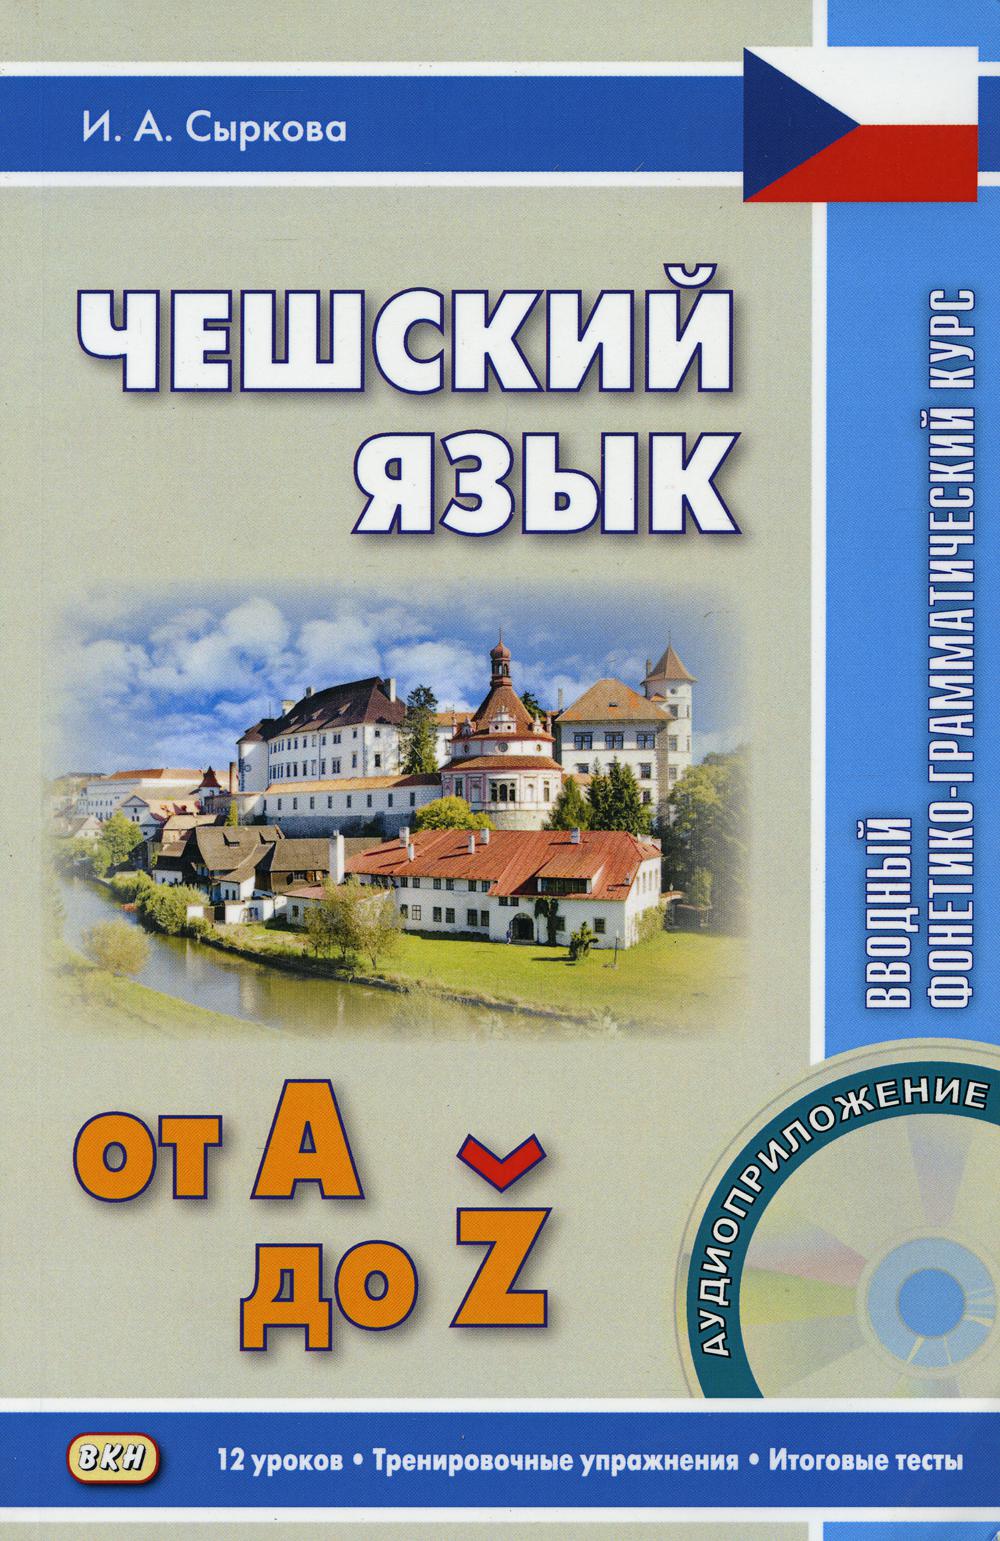 Чешский язык от А до Z. Вводный фонетико-грамматический курс. 2-е изд, испр. + CD.